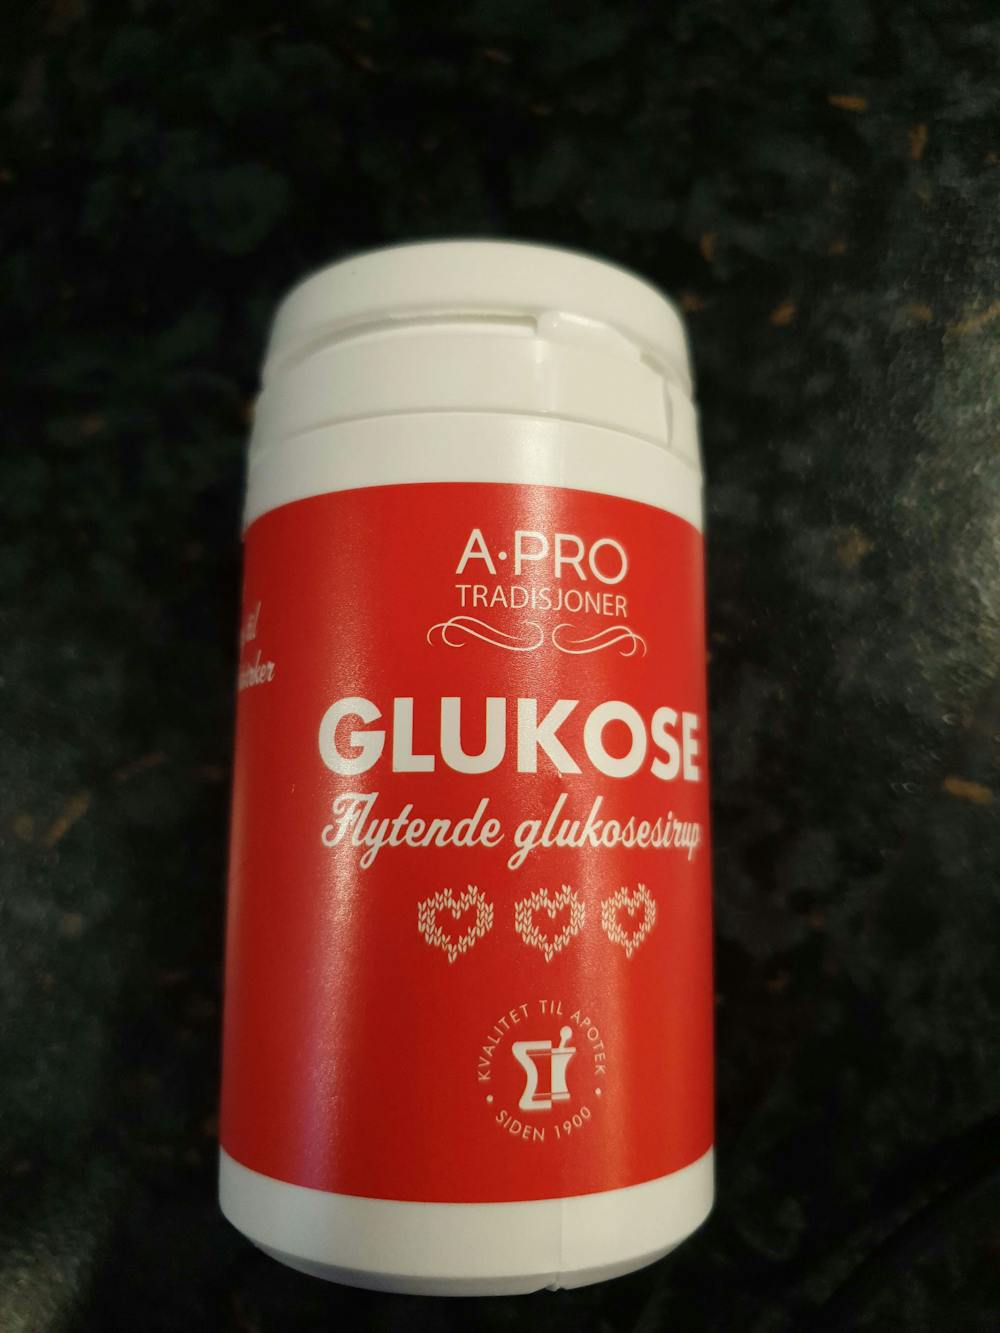 Glukose (Flytende glukosesirup), A-Pro